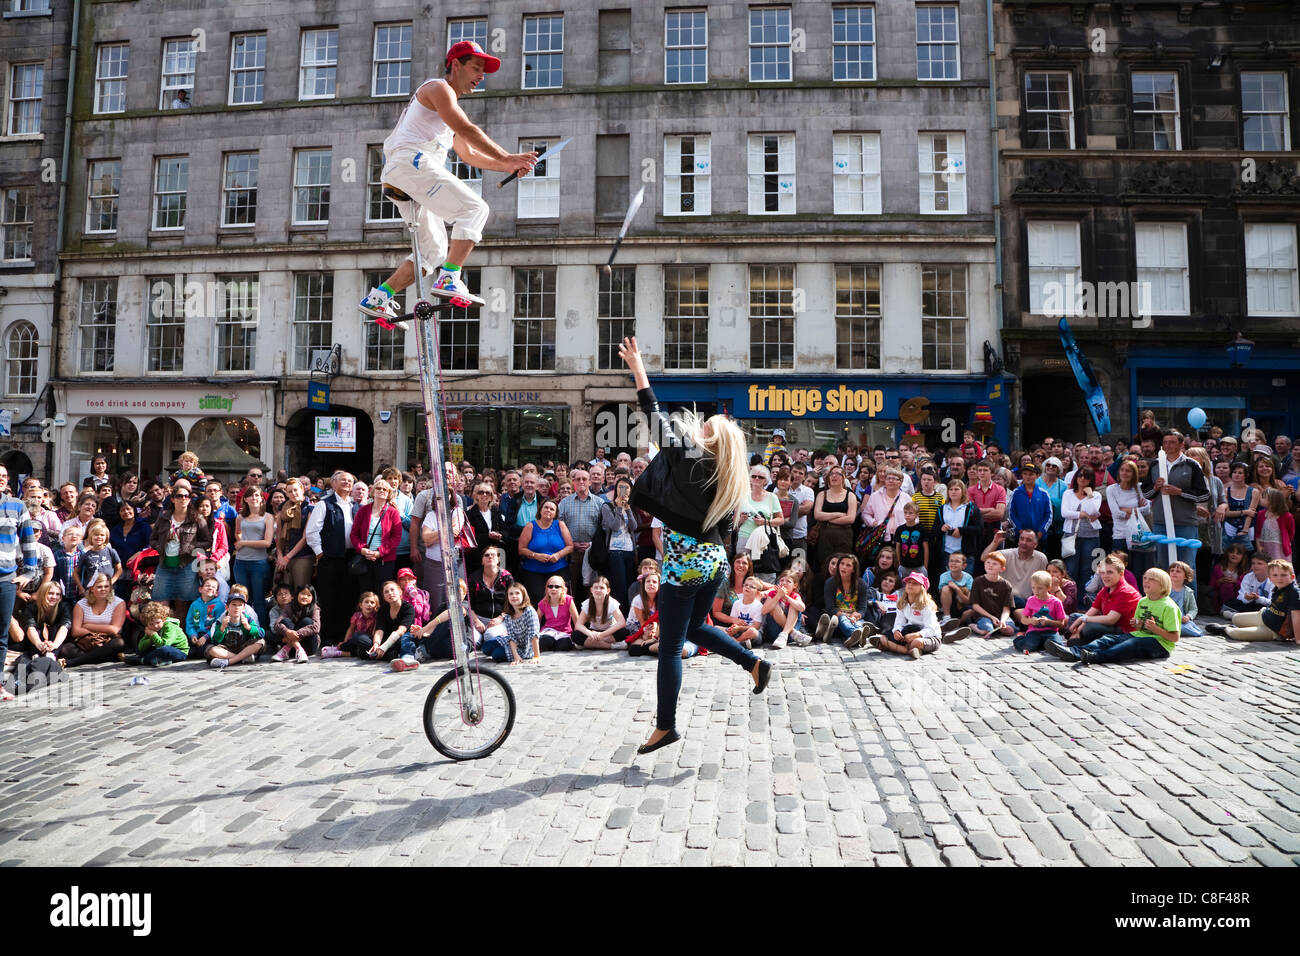 Jongleur beim Edinburgh Festival auf einem Einrad immer eine Frau, Messer für ihn fangen zu werfen Stockfoto